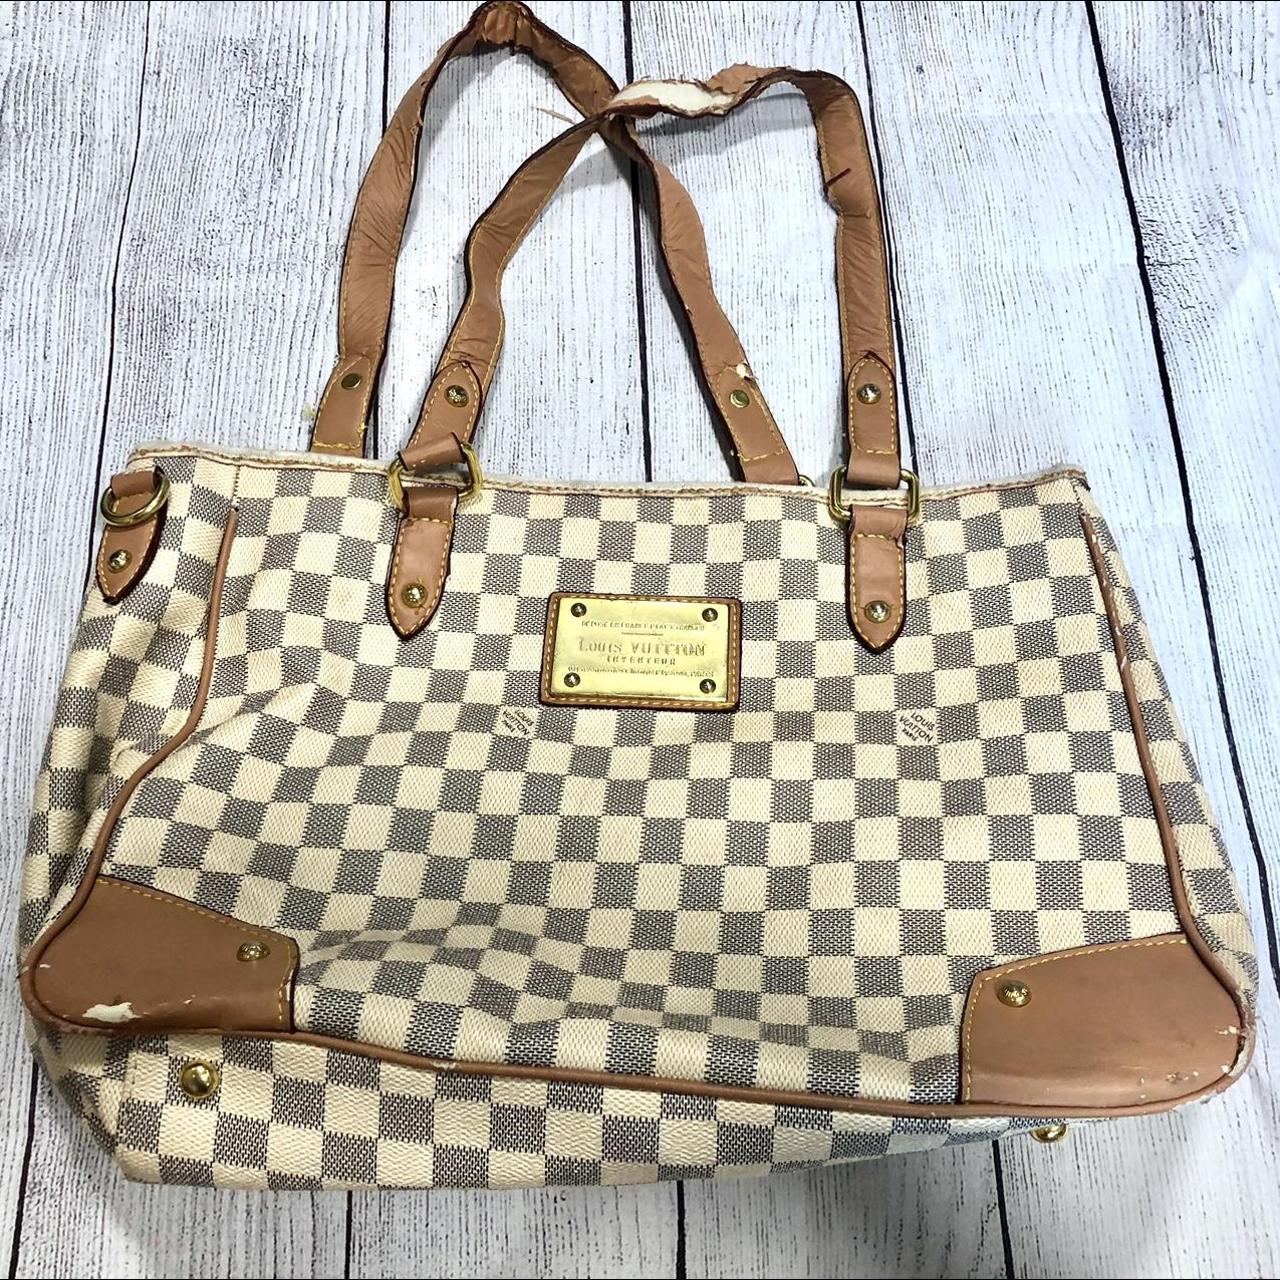 Beige faux leather Louis Vuitton. Bag needs repair,... - Depop